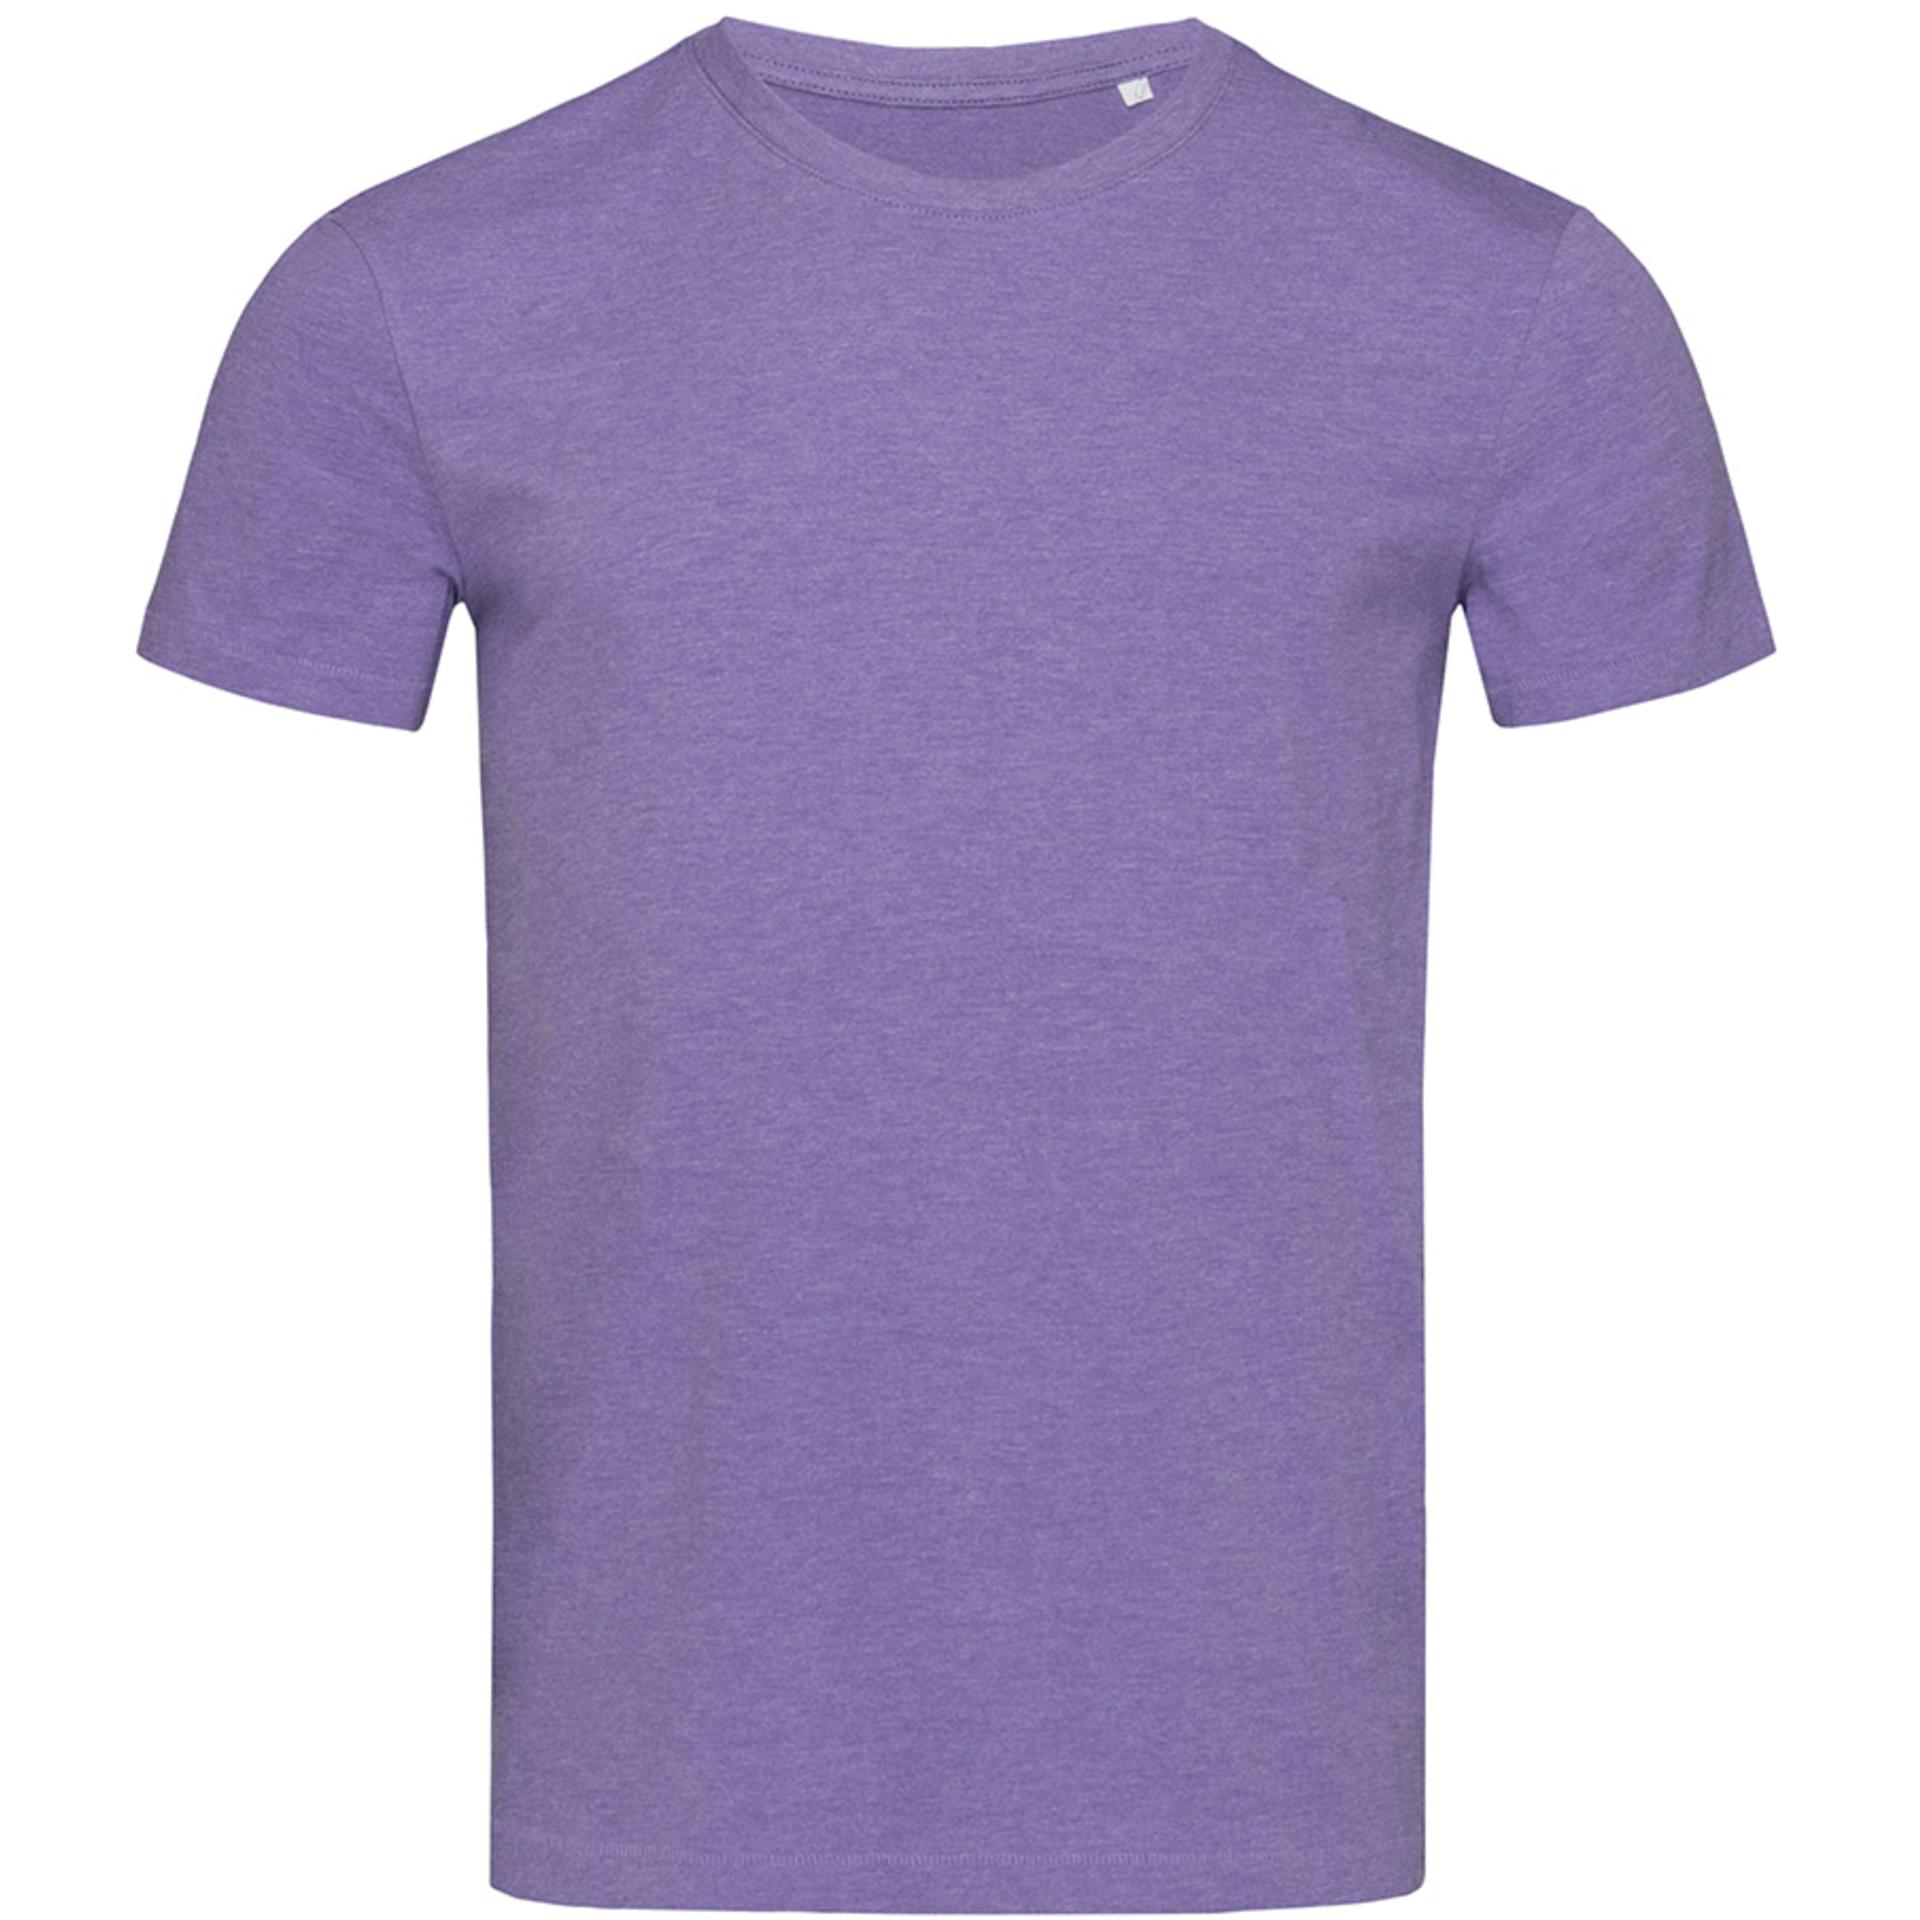 Футболка фиолетовая купить. Валберис футболки мужские. Фиолетовая футболка. Фиолетовая футболка мужская. Футболка мужская однотонная.